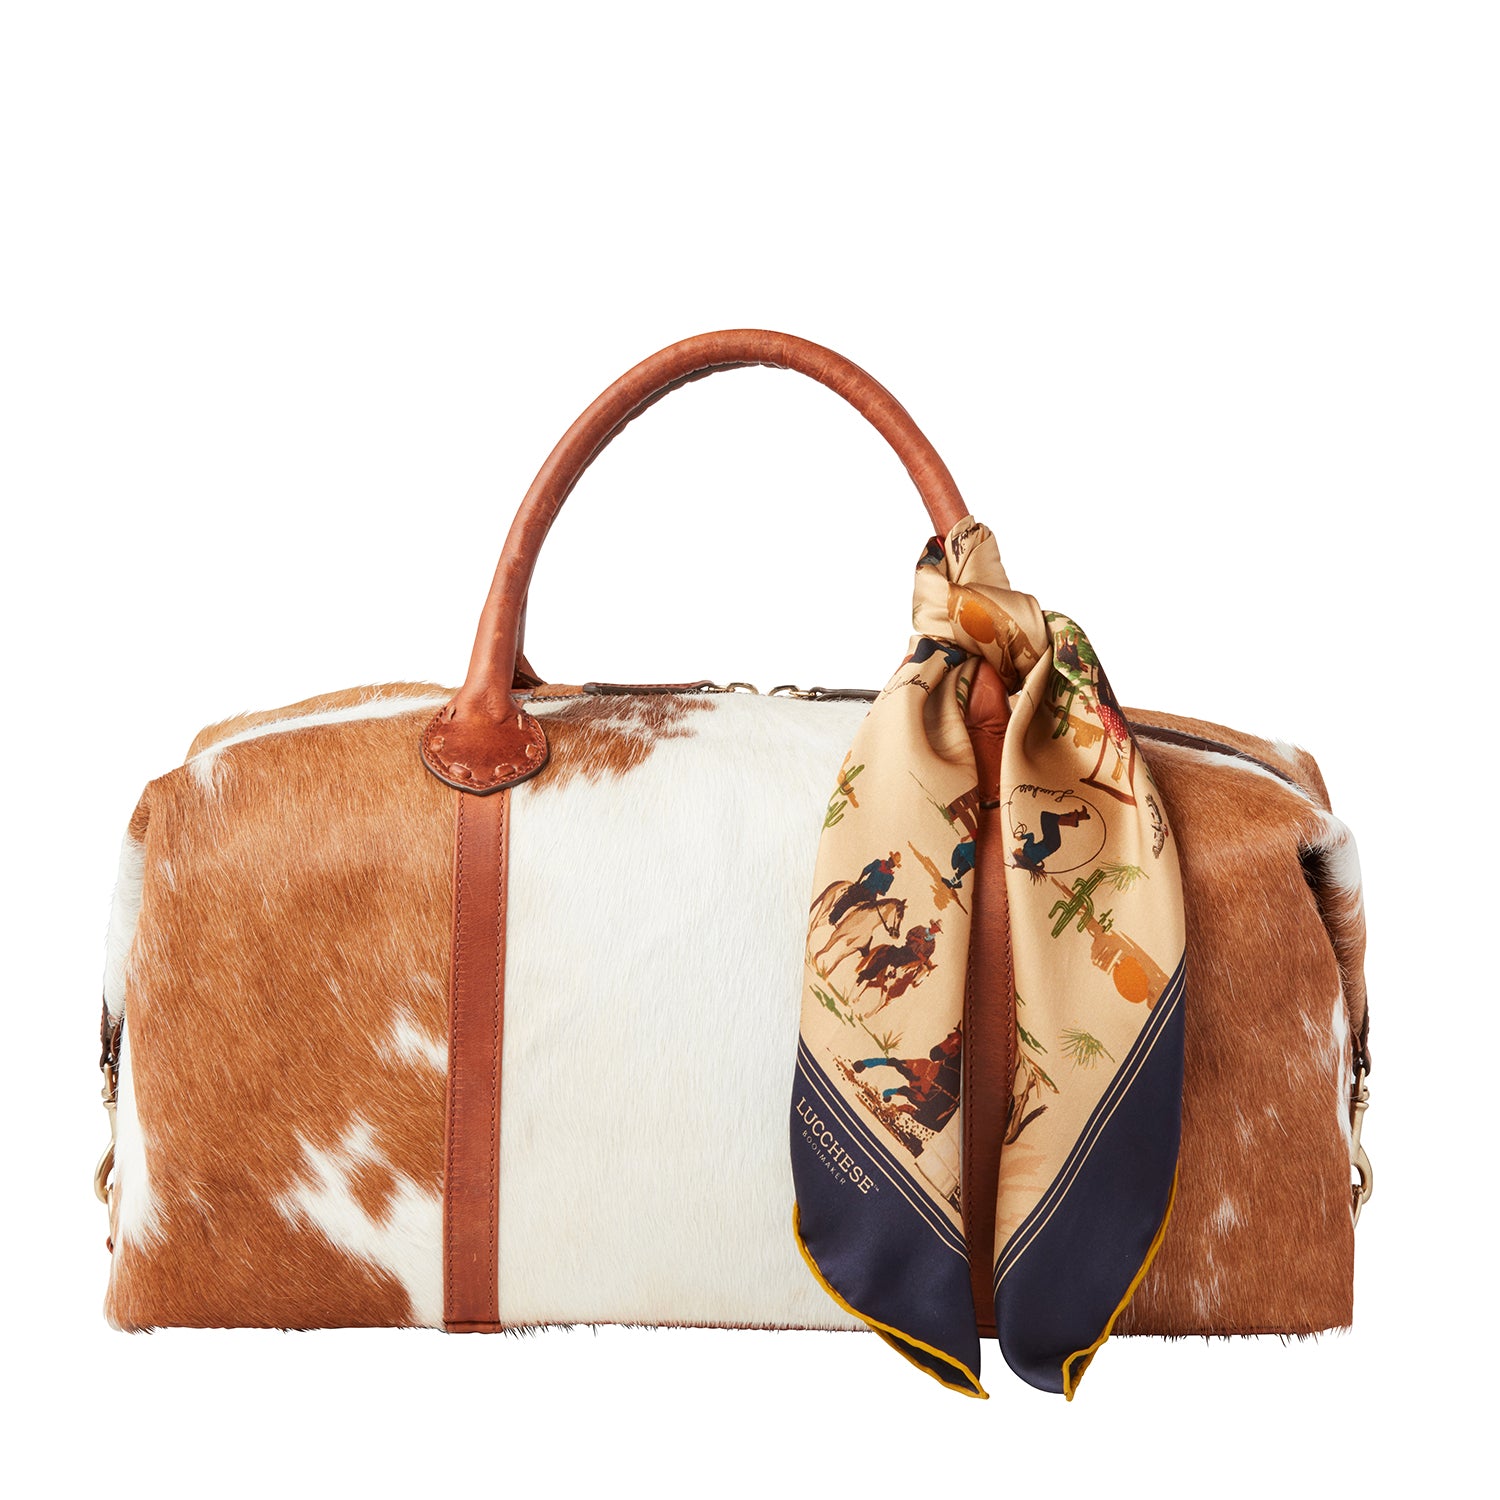 Denim Louis Vuitton Handbags - 65 For Sale on 1stDibs  louis vuitton denim  bag, louis vuitton denim tote, denim louis vuitton purse